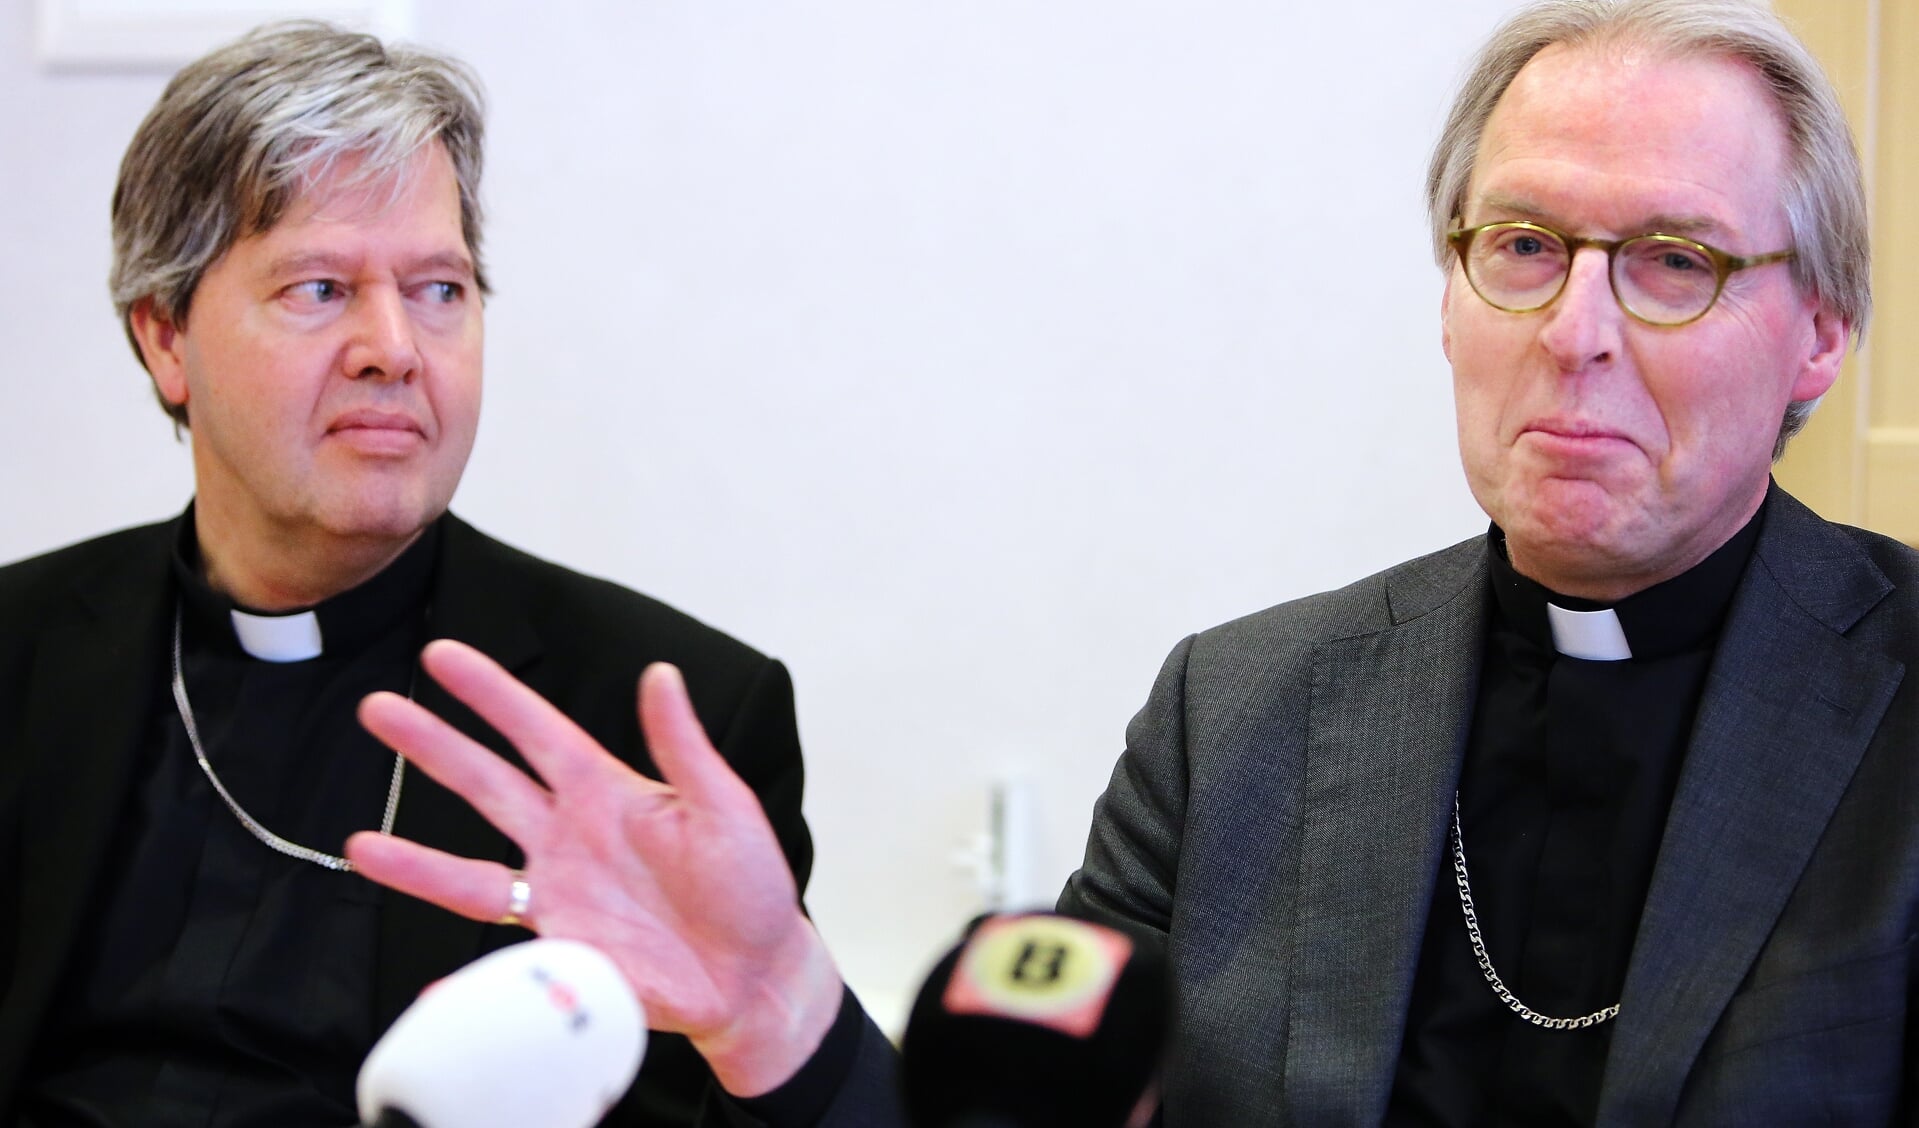 Hulpbisschop Rob Mutsaerts (links) bij de presentatie van bisschop Gerard de Korte als nieuwe bisschop van Den Bosch op 5 maart 2016. 